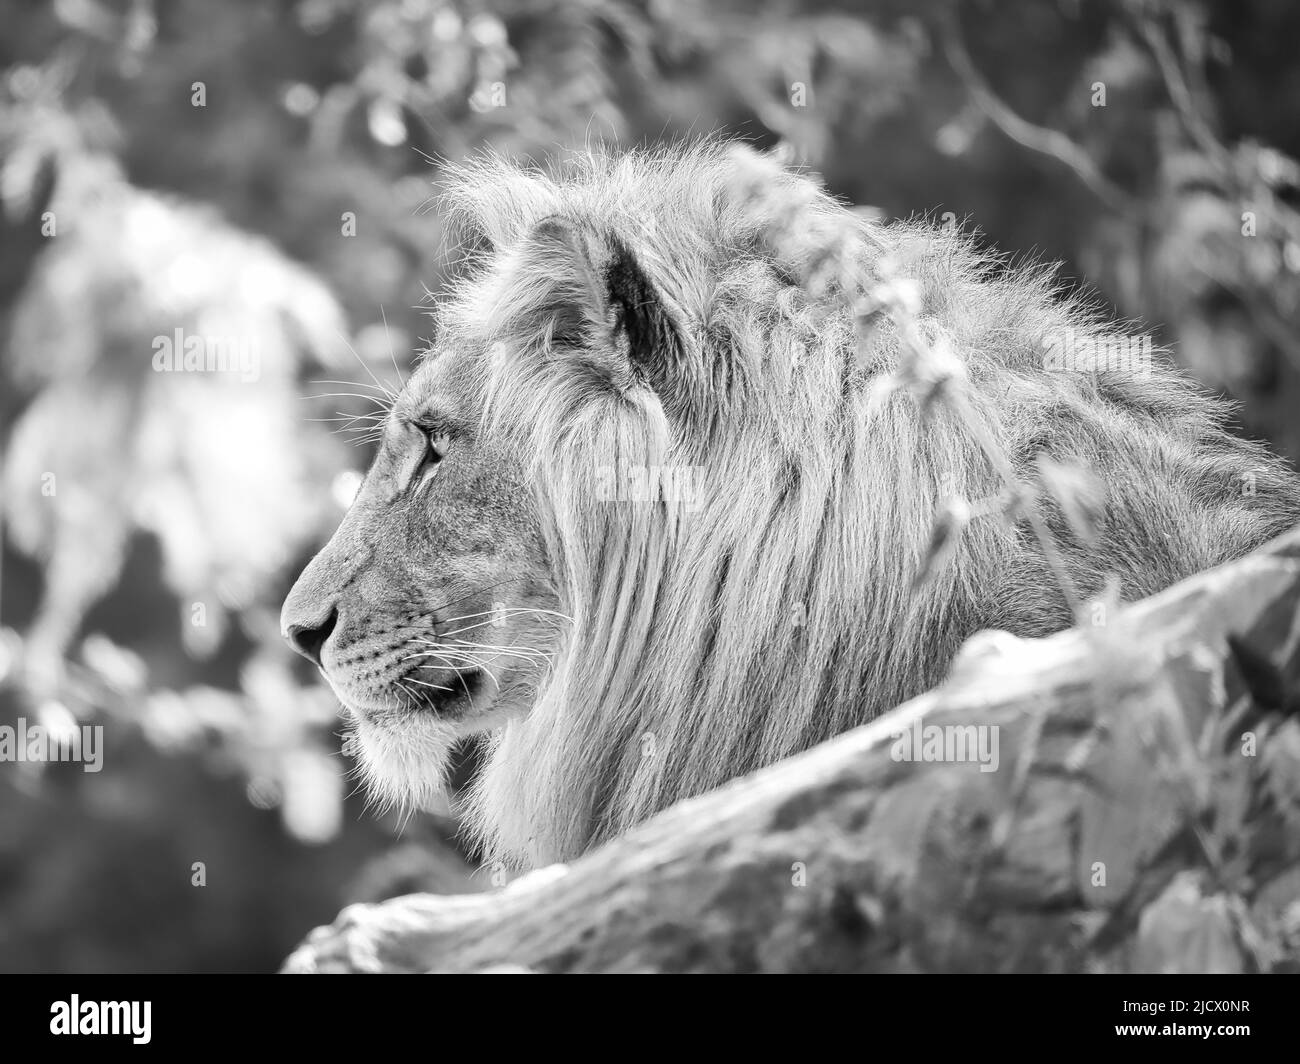 Löwe in schwarz und weiß mit schöner Mähne auf einem Felsen liegend. Entspanntes Raubtier. Tierfoto der großen Katze. Stockfoto